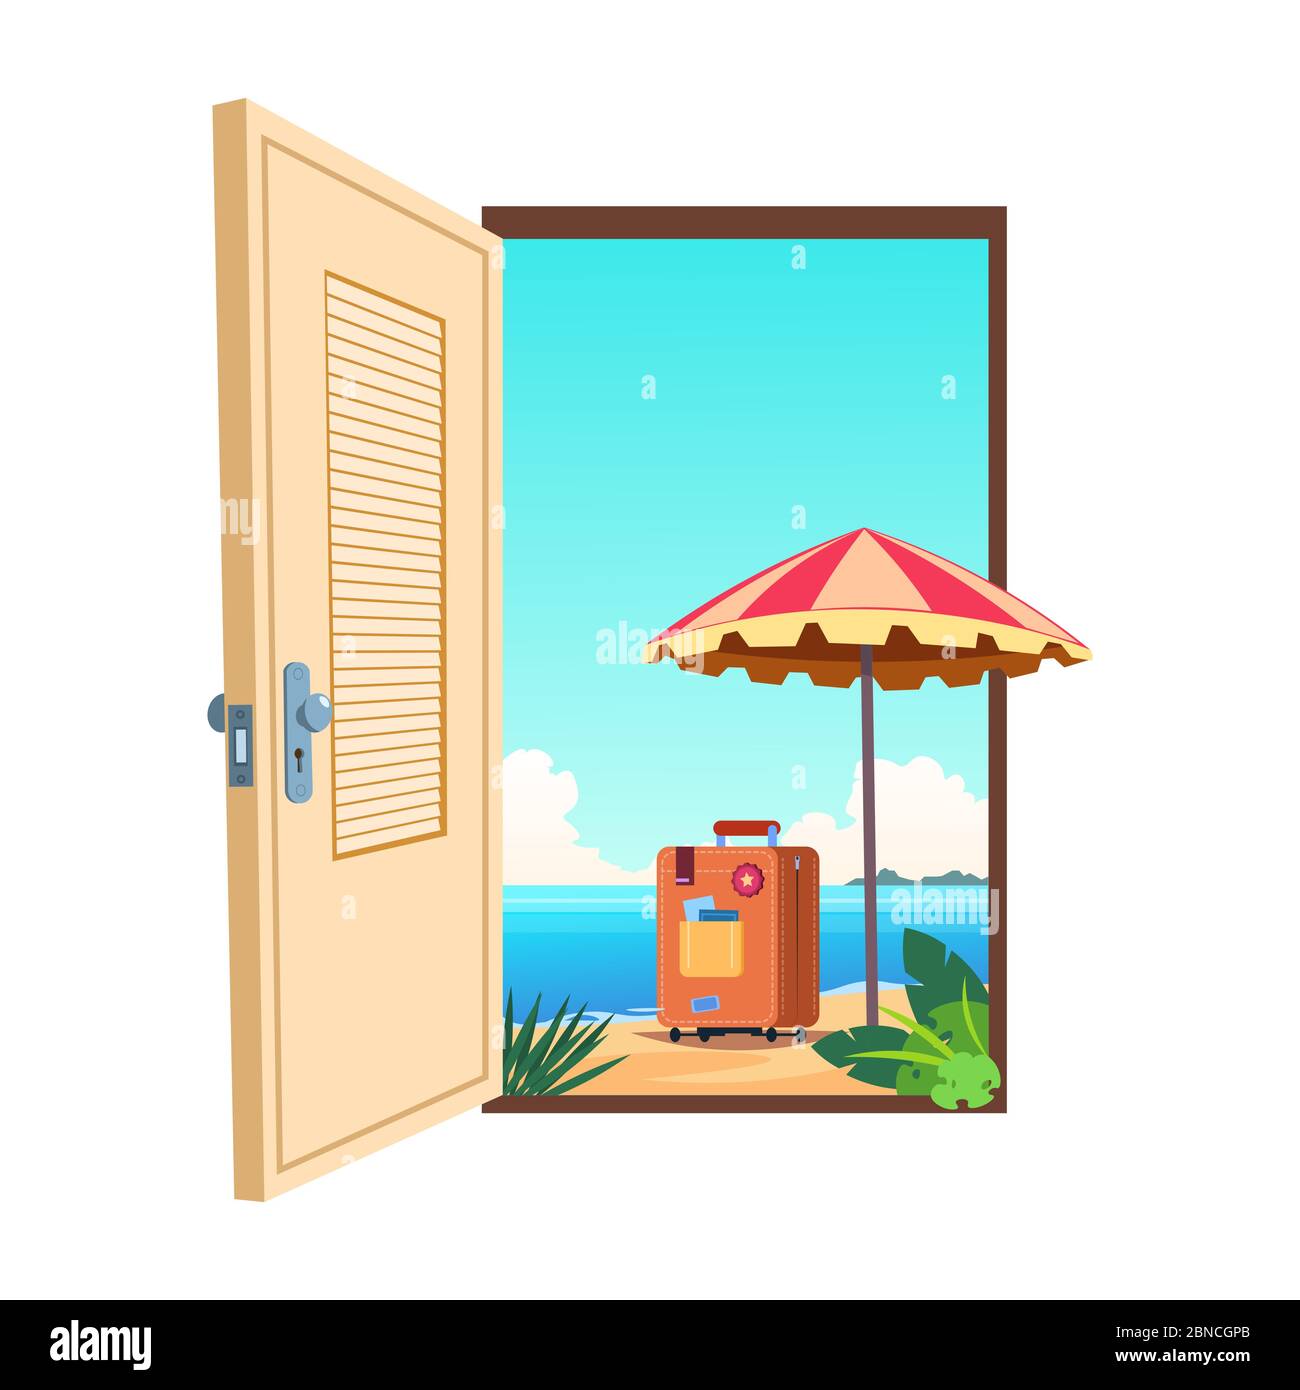 Willkommen bei der Strand Cartoon Vektor Vorlage. Illustration der Tür zum Meer Strand, Paradies Reise Stock Vektor